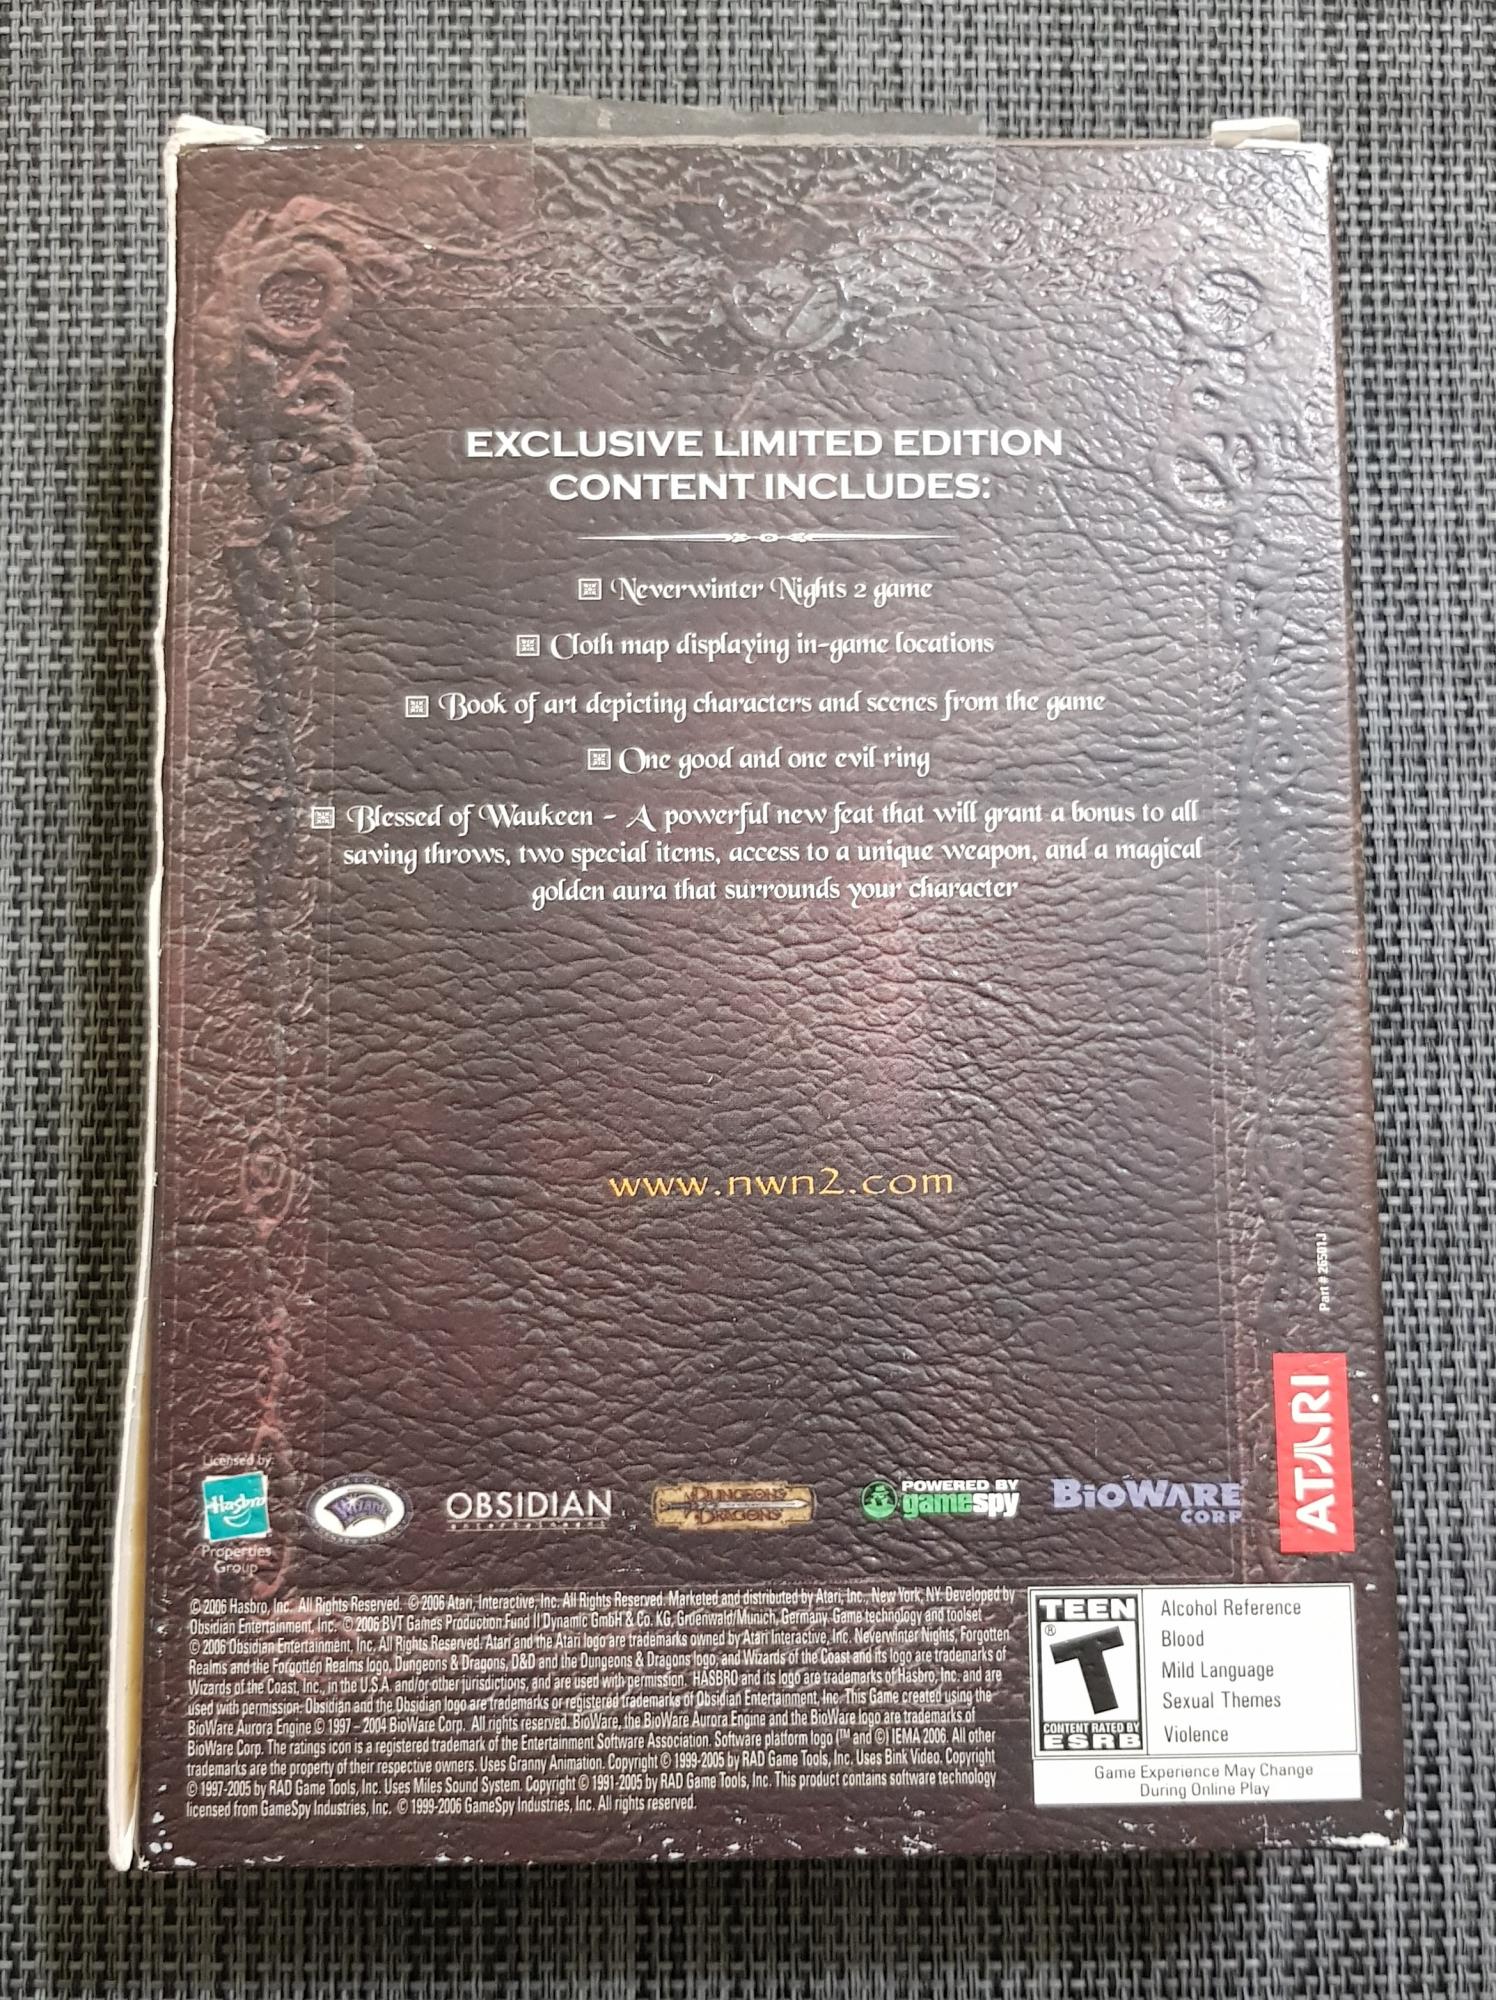 Игра Neverwinter Nights 2 - Limited Edition для PC в Москве 89256150066 купить 2